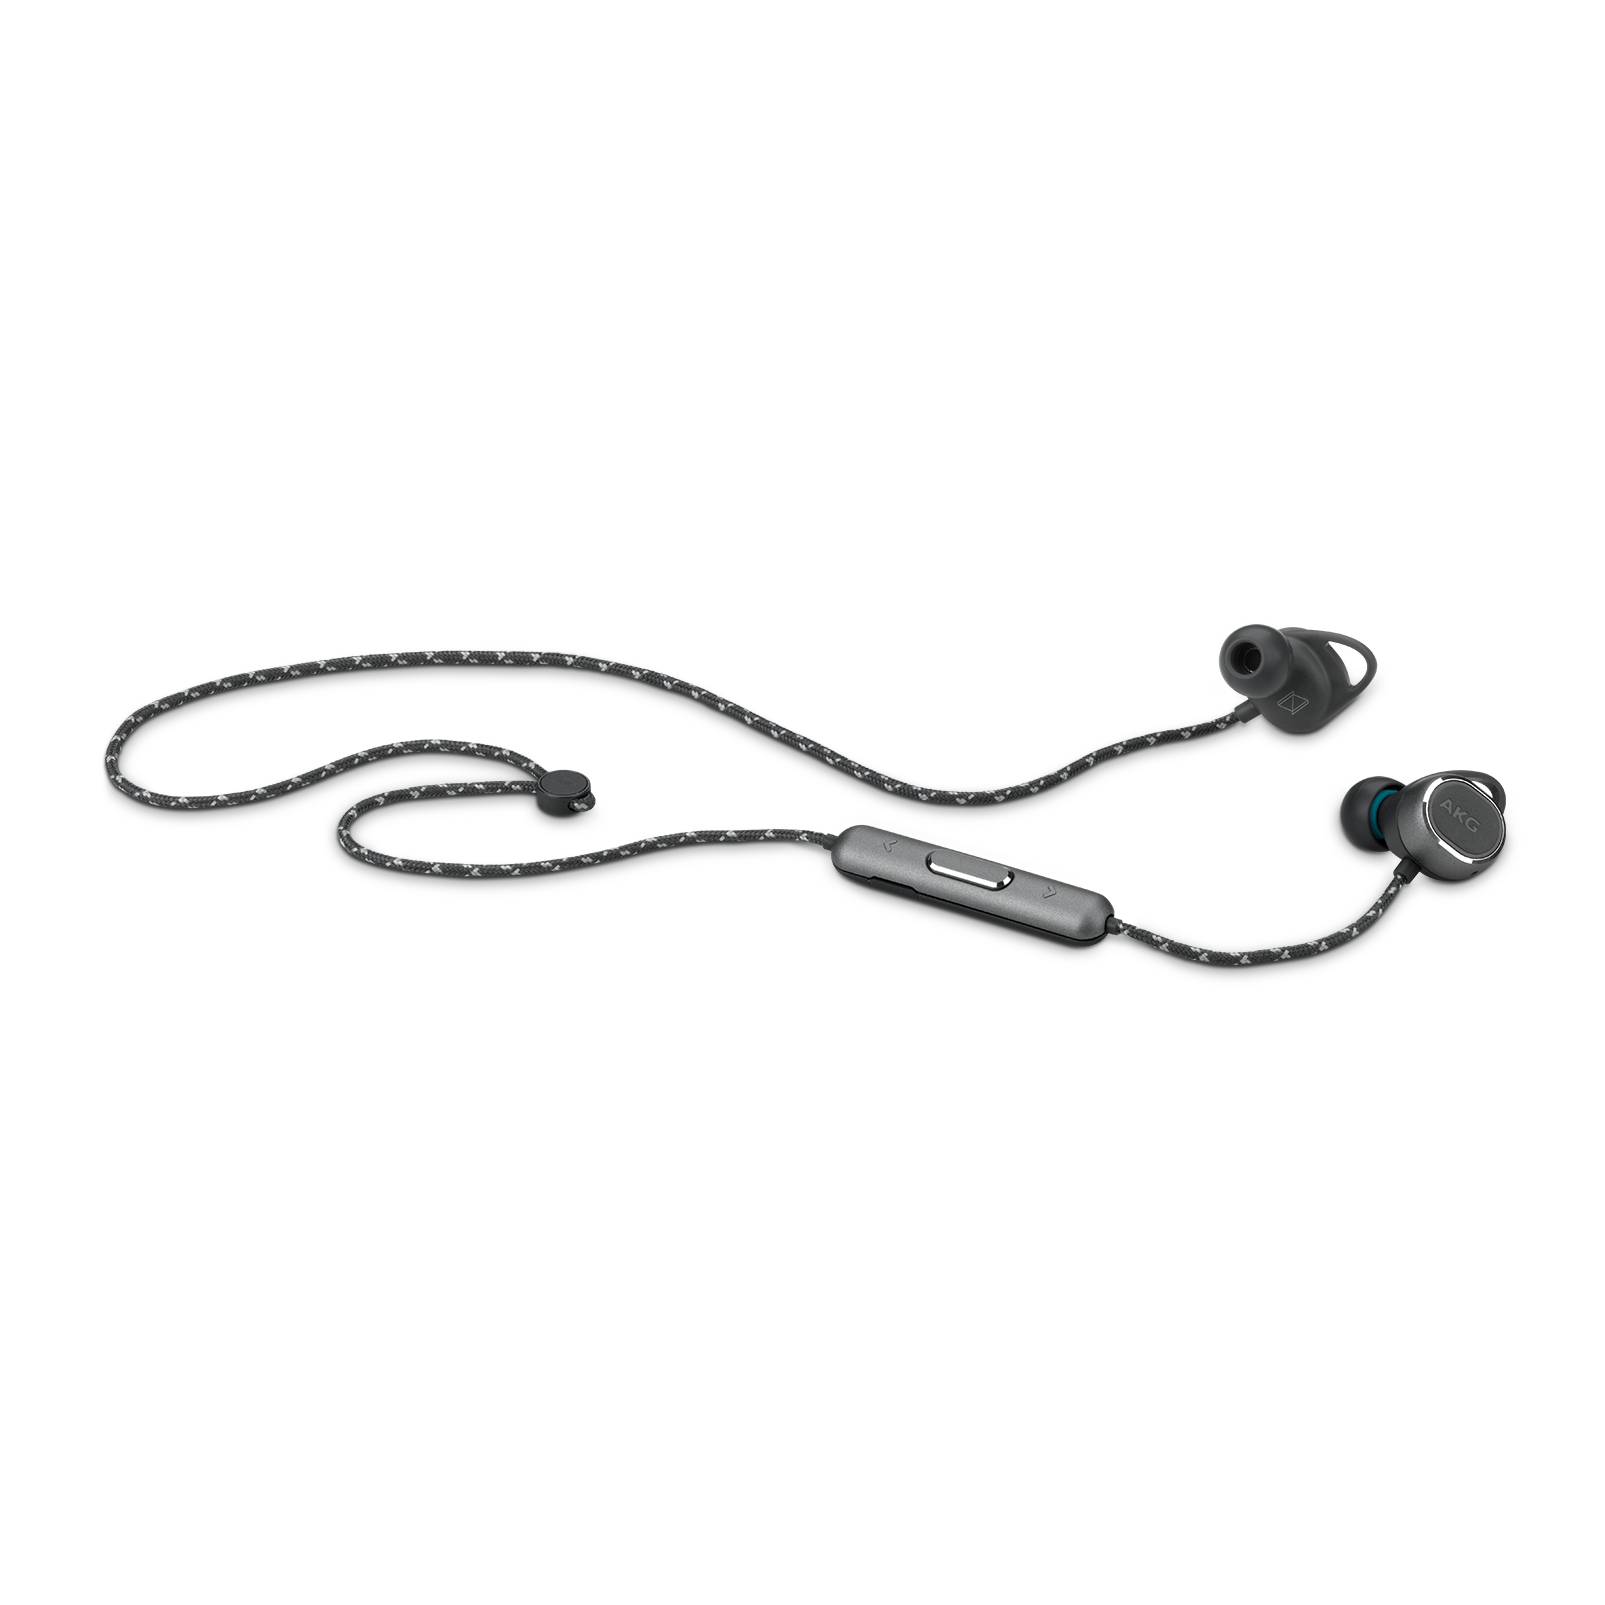 AKG N200WIRELESS - Black - Reference wireless in-ear headphones - Detailshot 2